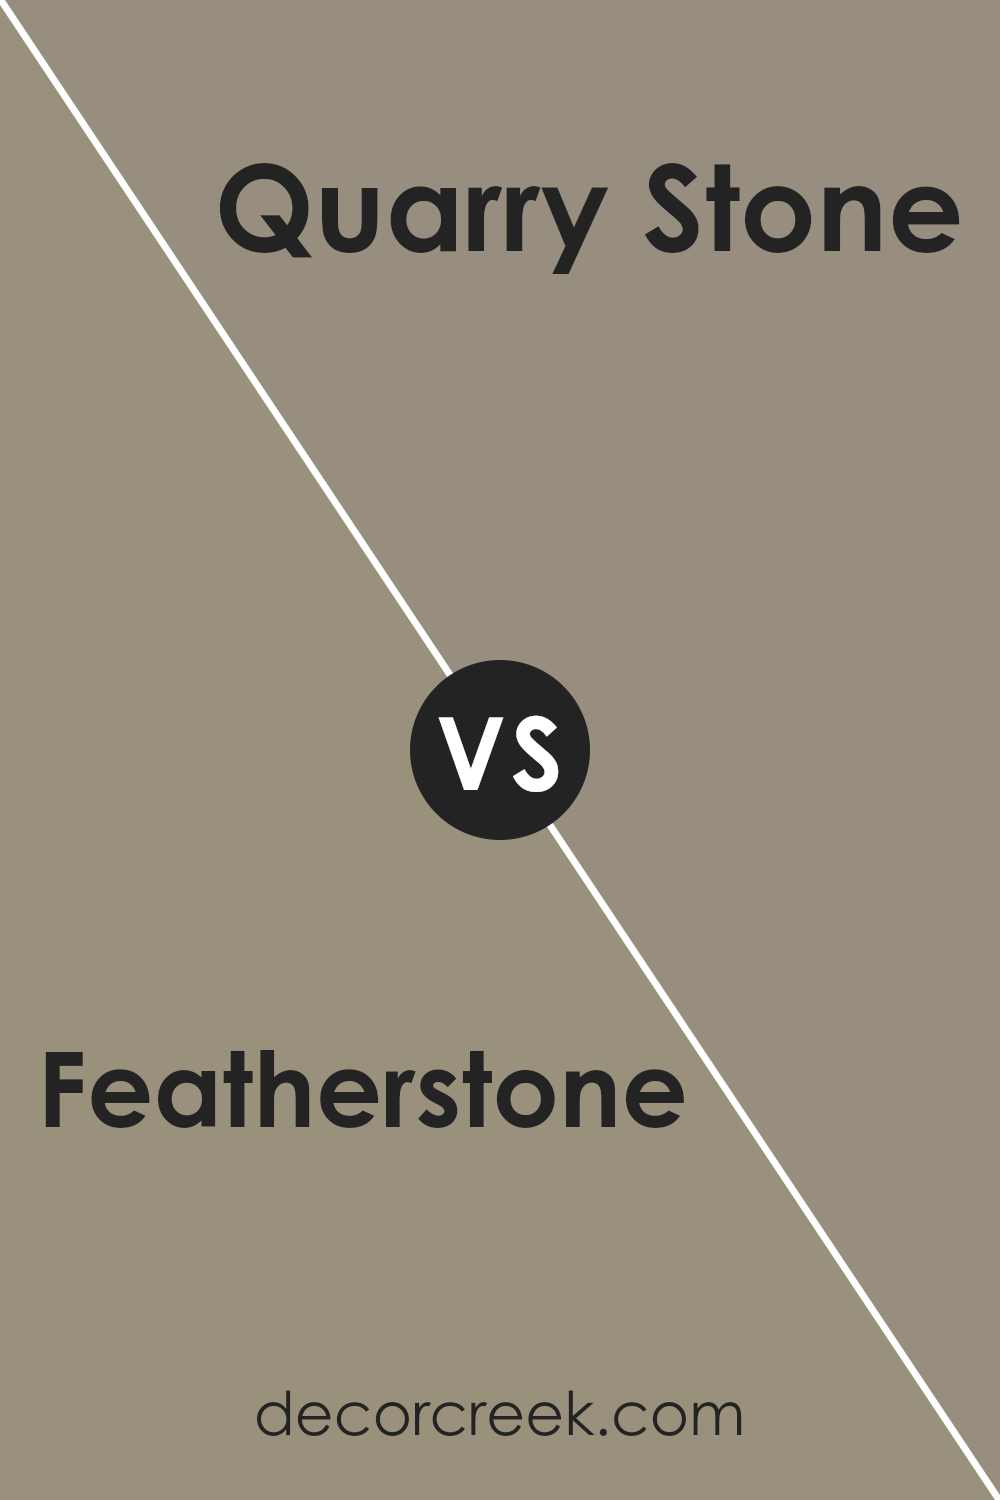 featherstone_sw_9518_vs_quarry_stone_sw_9603